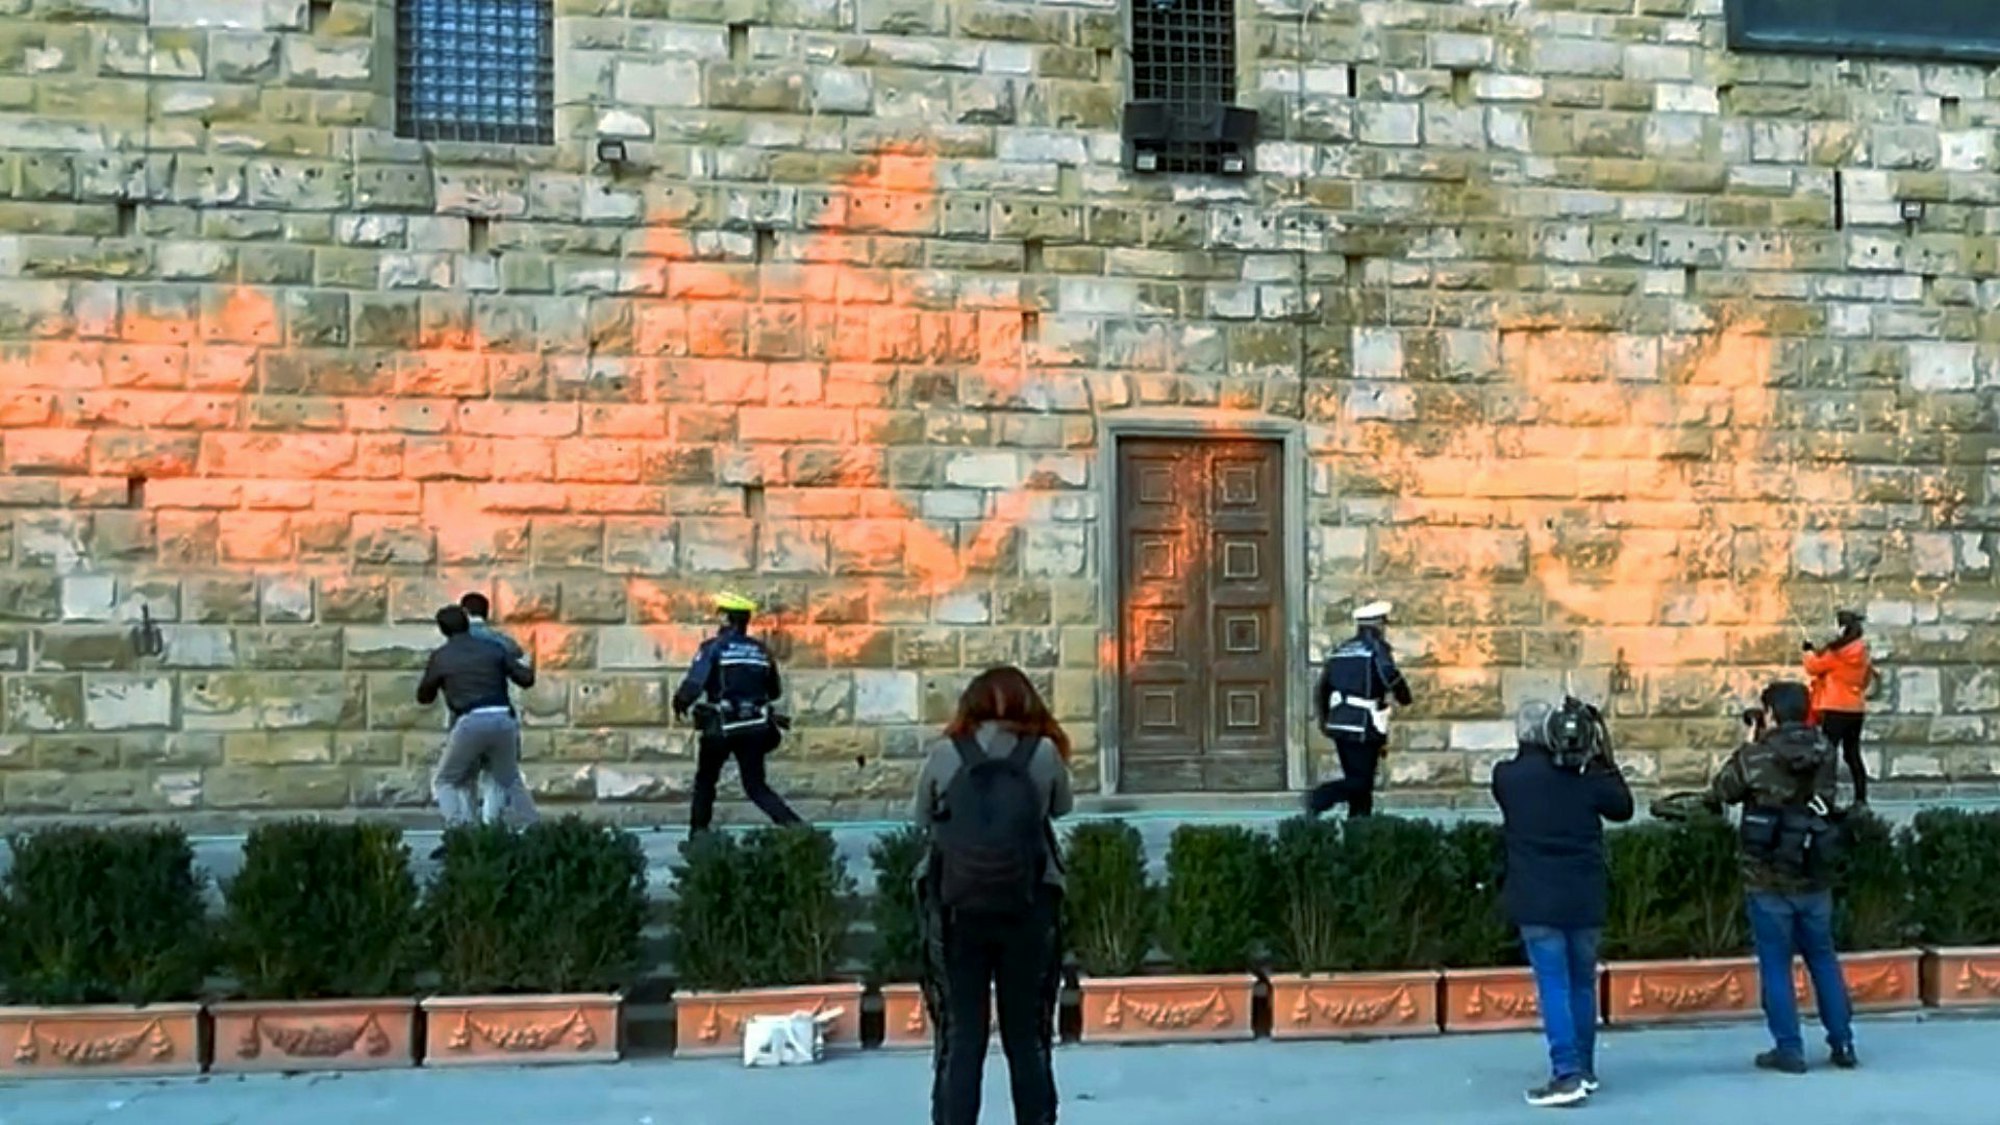 Klimaaktivisten beschmieren die Fassade des berühmten Palazzo Vecchio in Florenz mit Farbe.